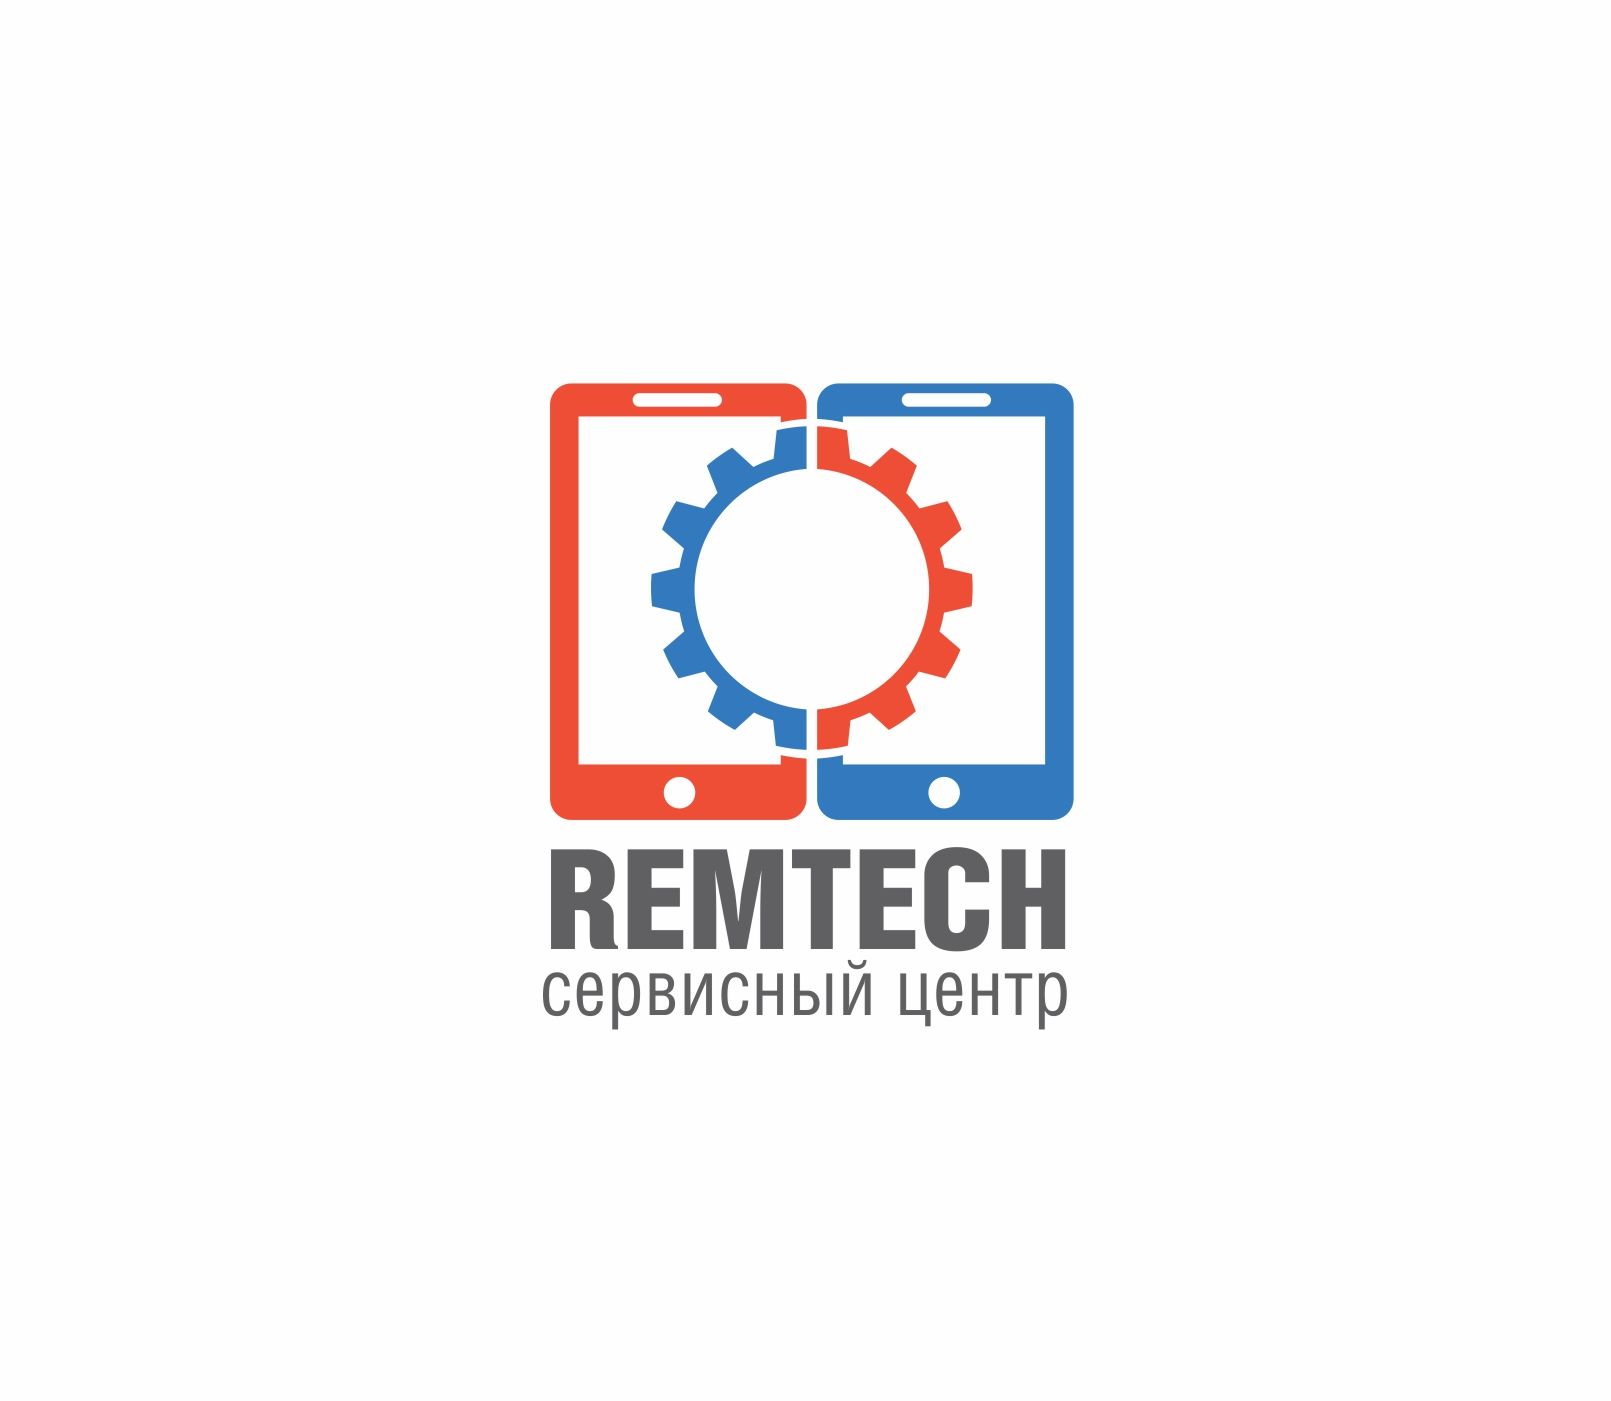 Лого и фирменный стиль для Логотип для СЦ remtech77.ru - дизайнер F-maker